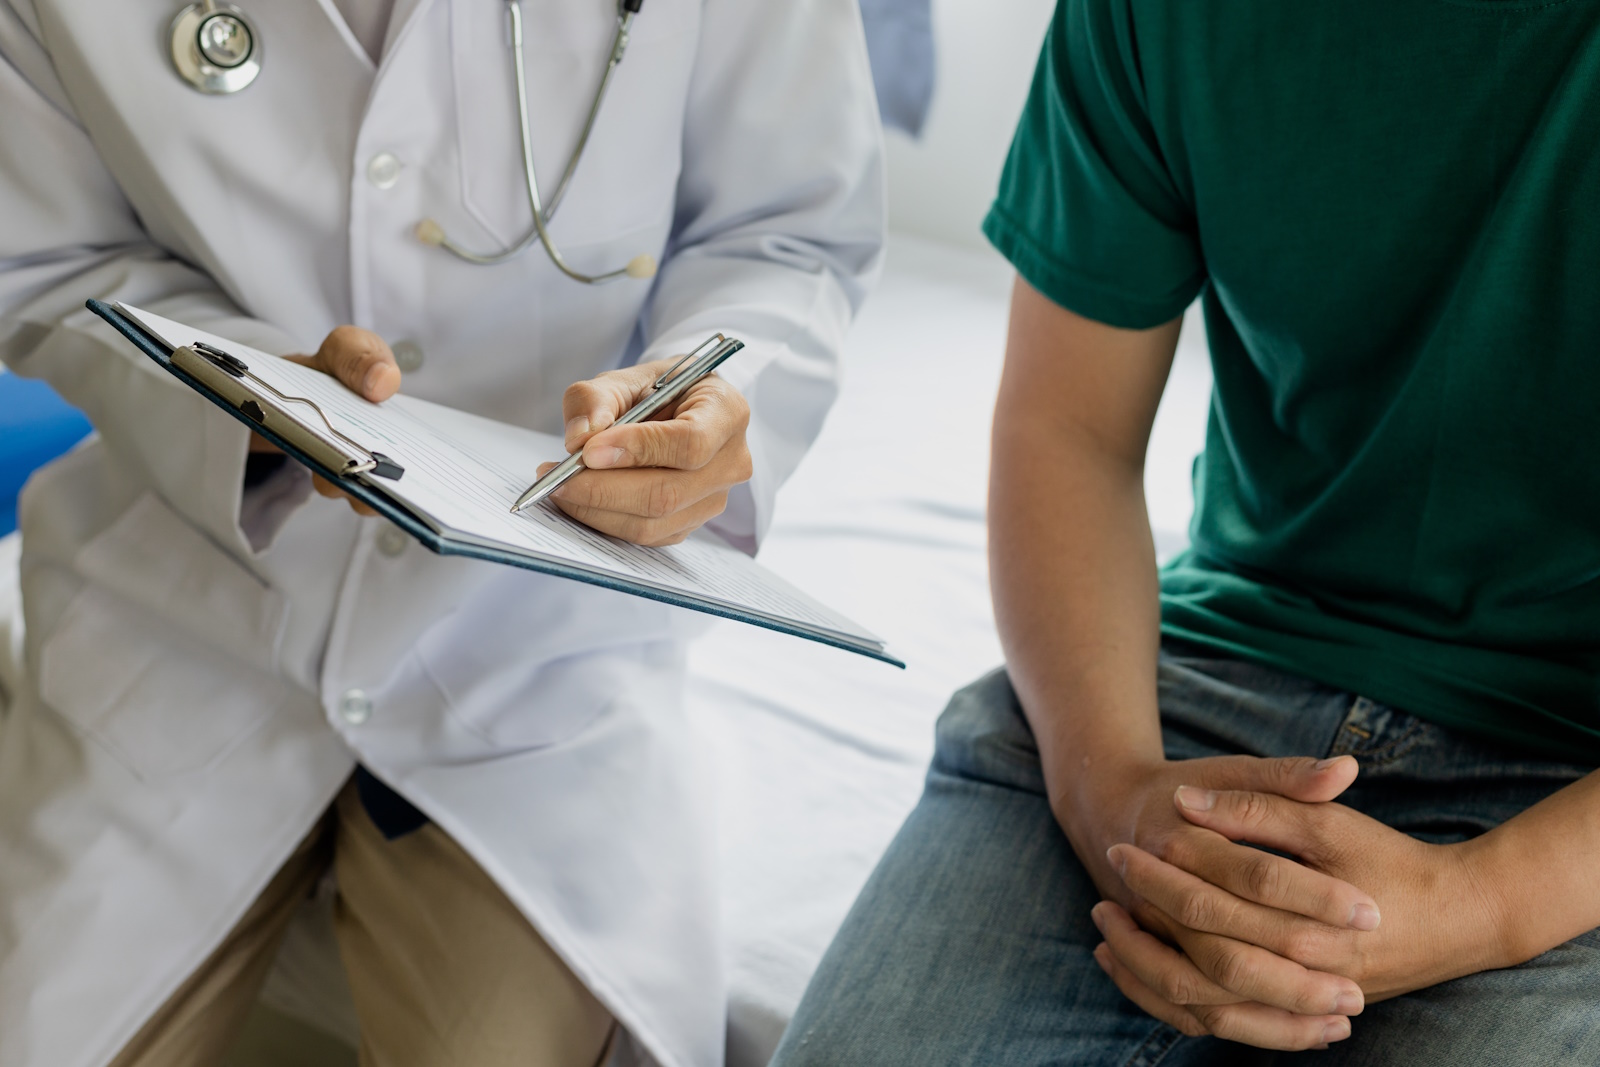 Featured image for “Neu: Prostata MRT kostenfrei für Kassenpatienten im Rahmen des Selektivvertrags”